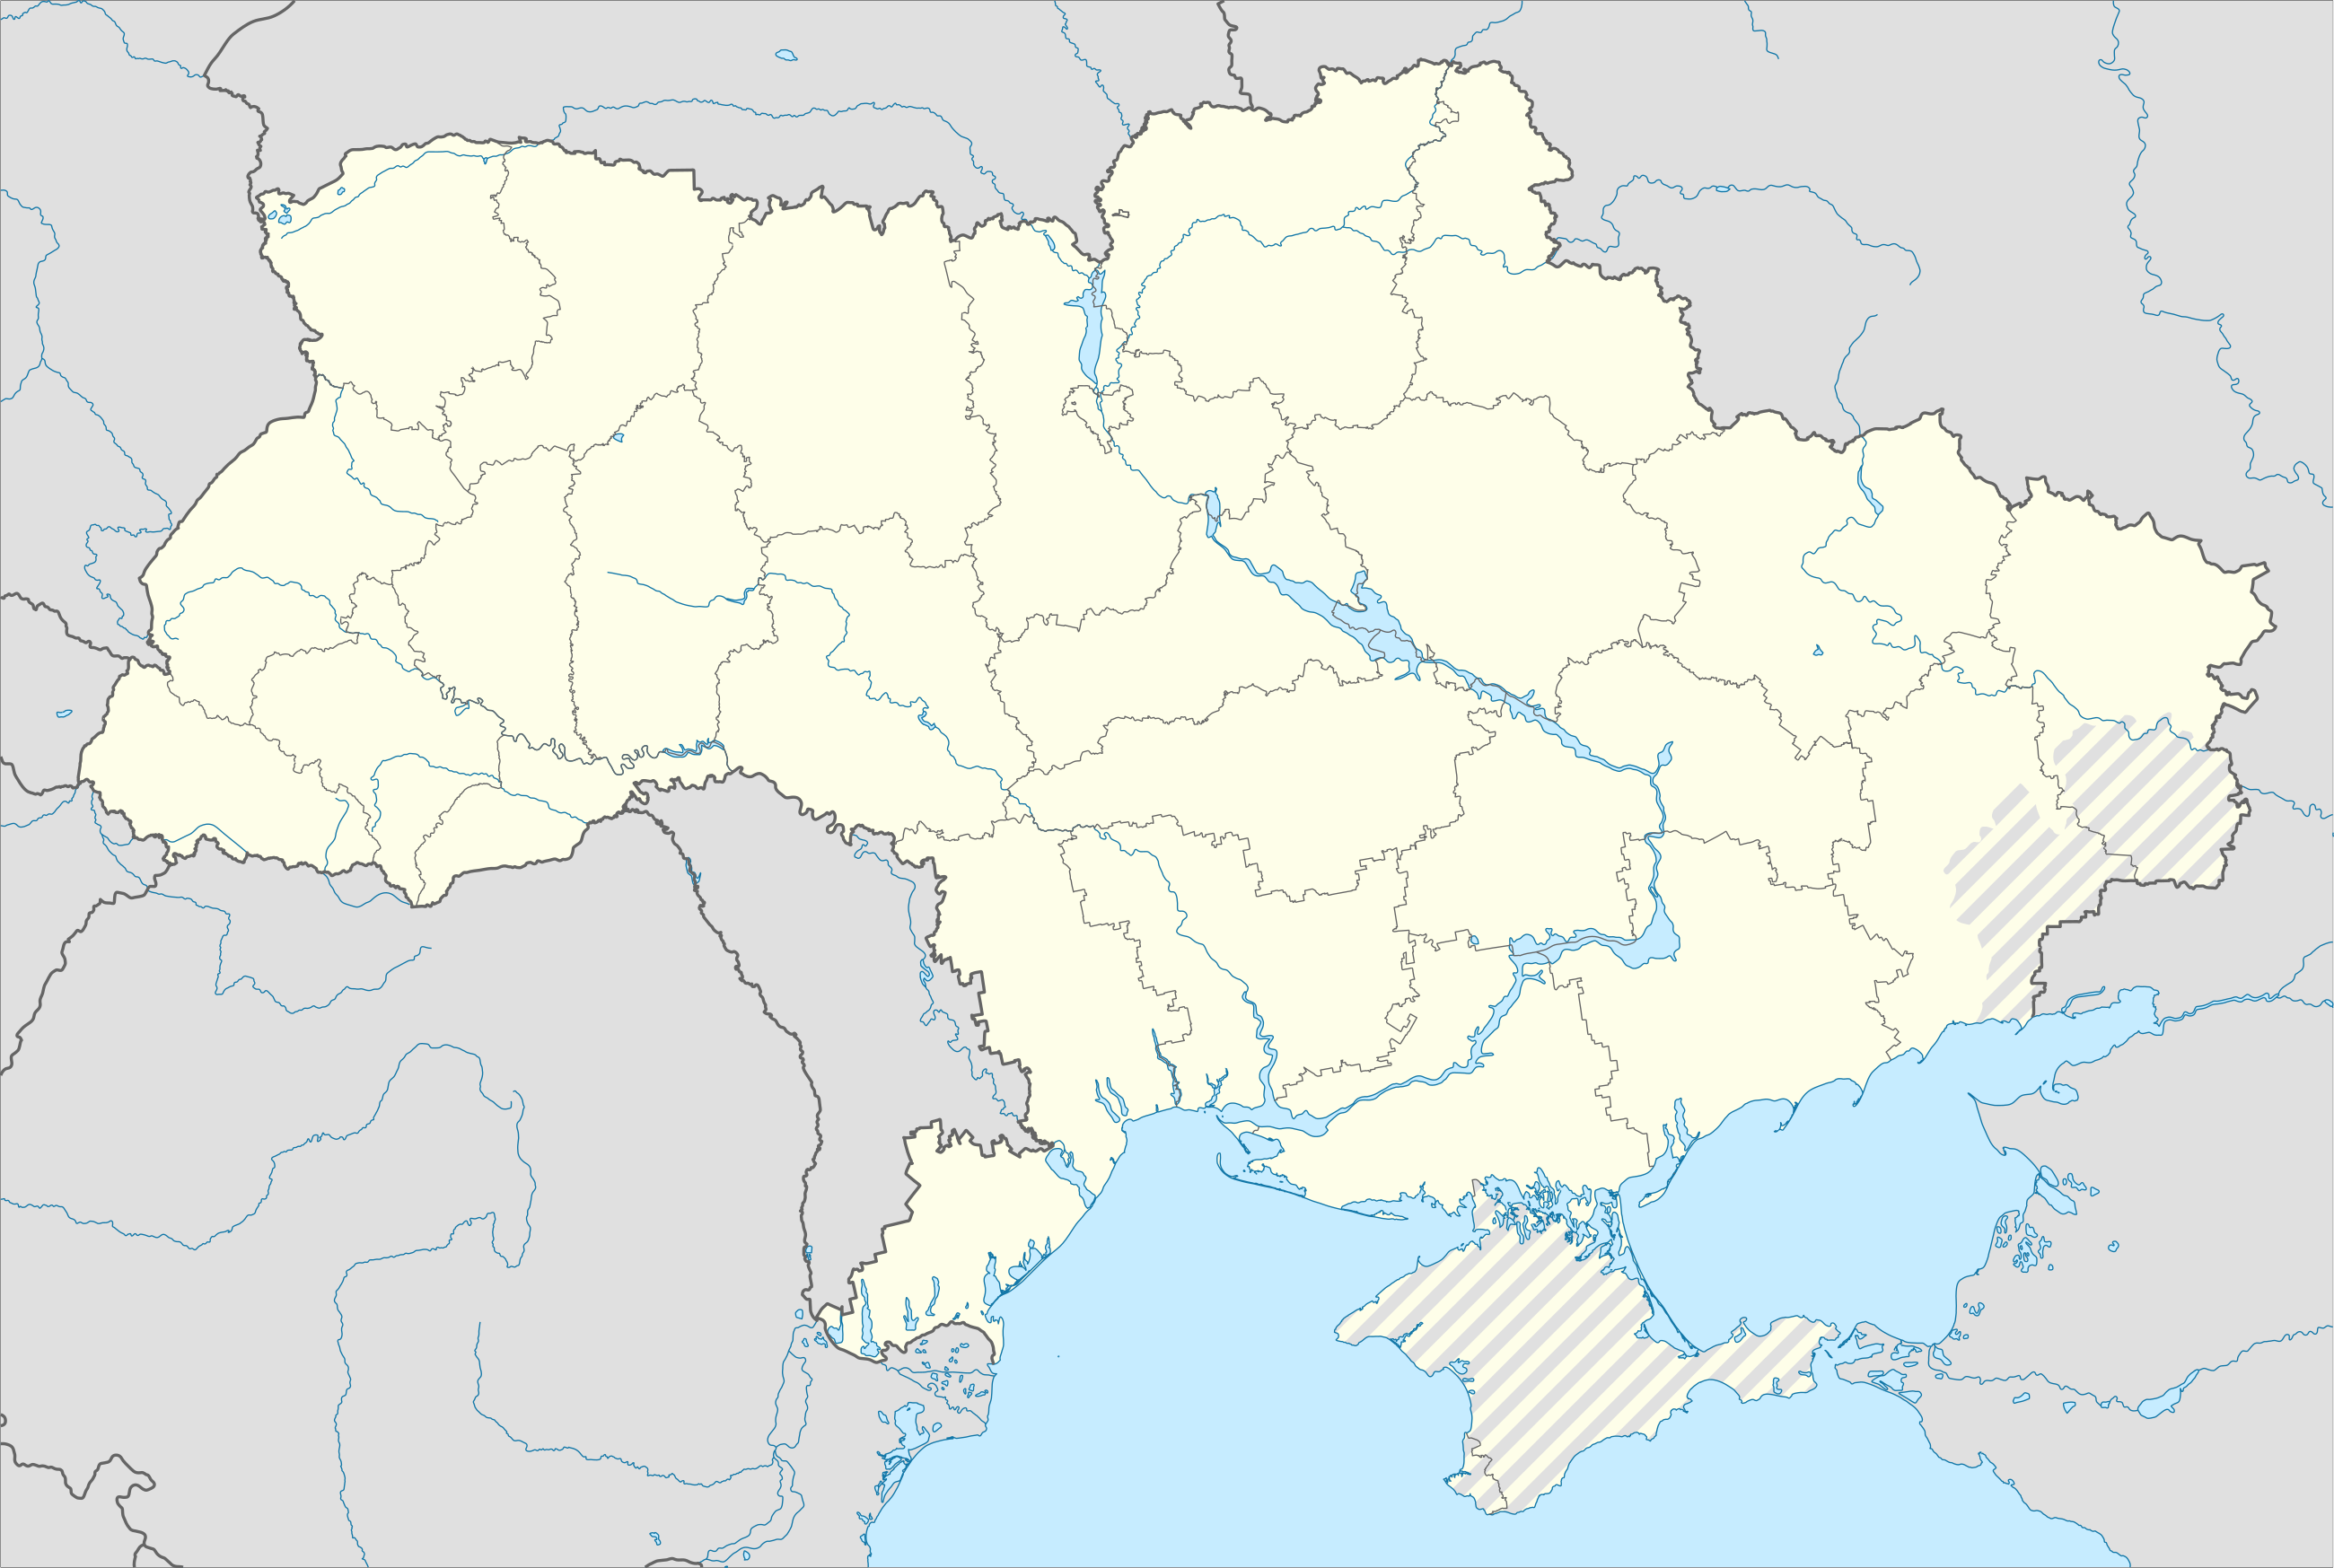 Russo-Ukrainian War detailed map is located in Ukraine